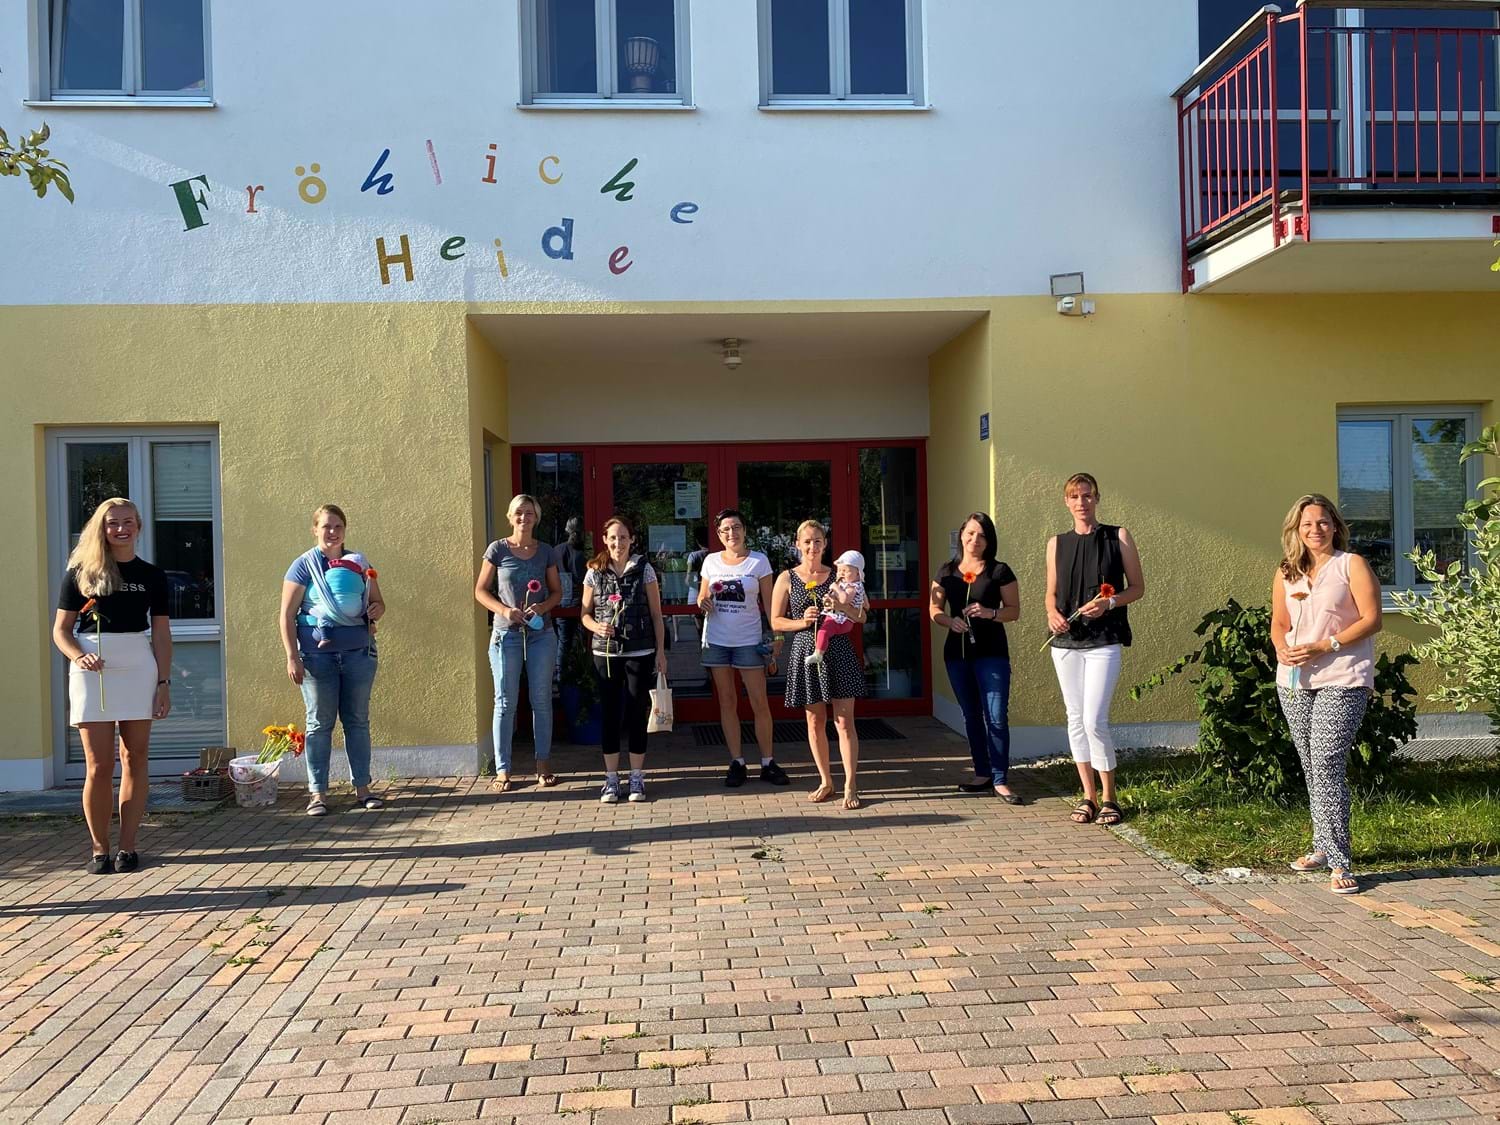 Kindergarten "Fröhliche Heide" Saal an der Donau | Gemeinde Saal an der